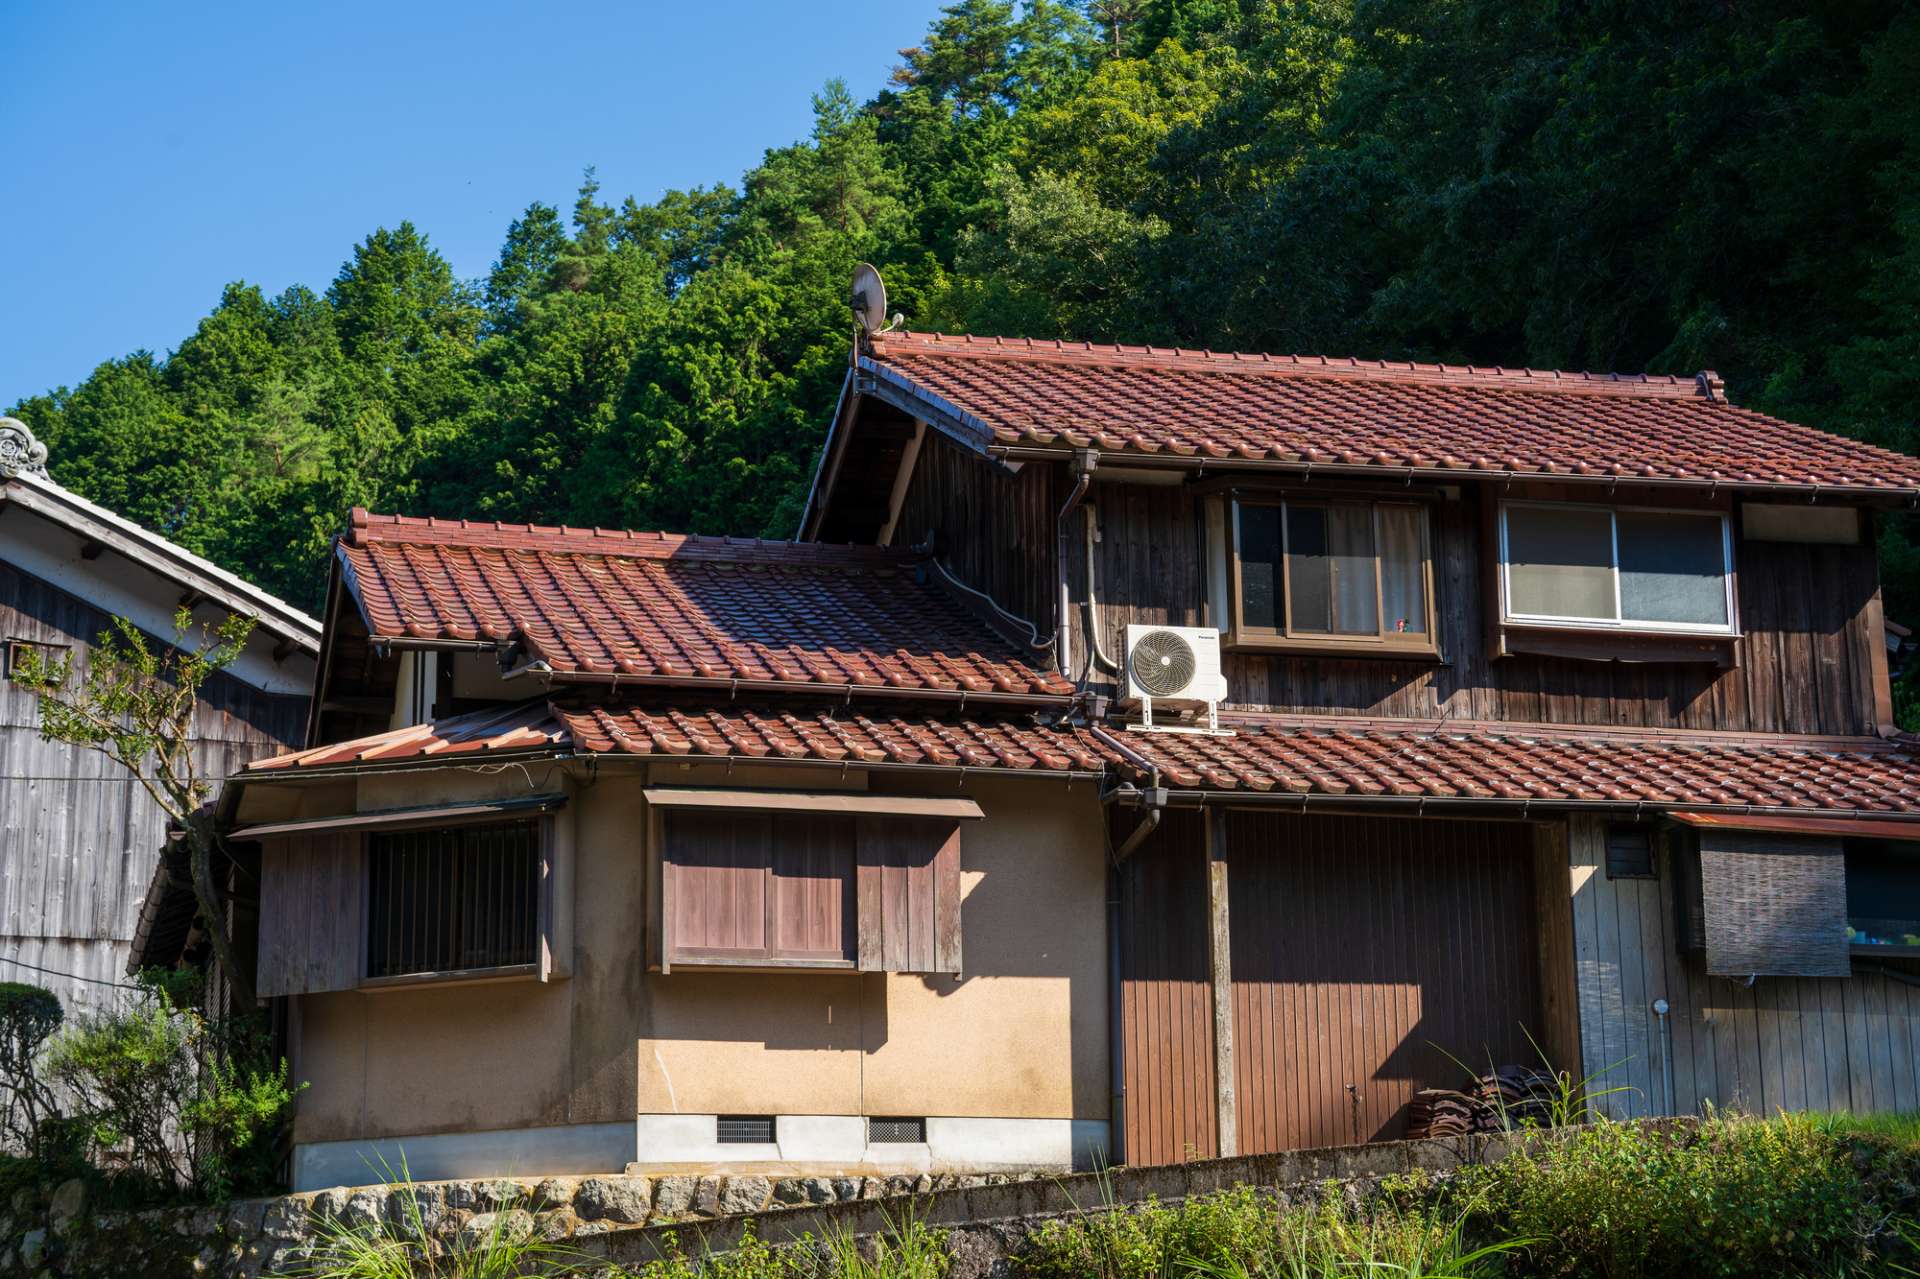 空き家売却・対策・活用で有用な再利用方法を奈良県五條市や和歌山県橋本市など奈良近隣の皆様にご提案します